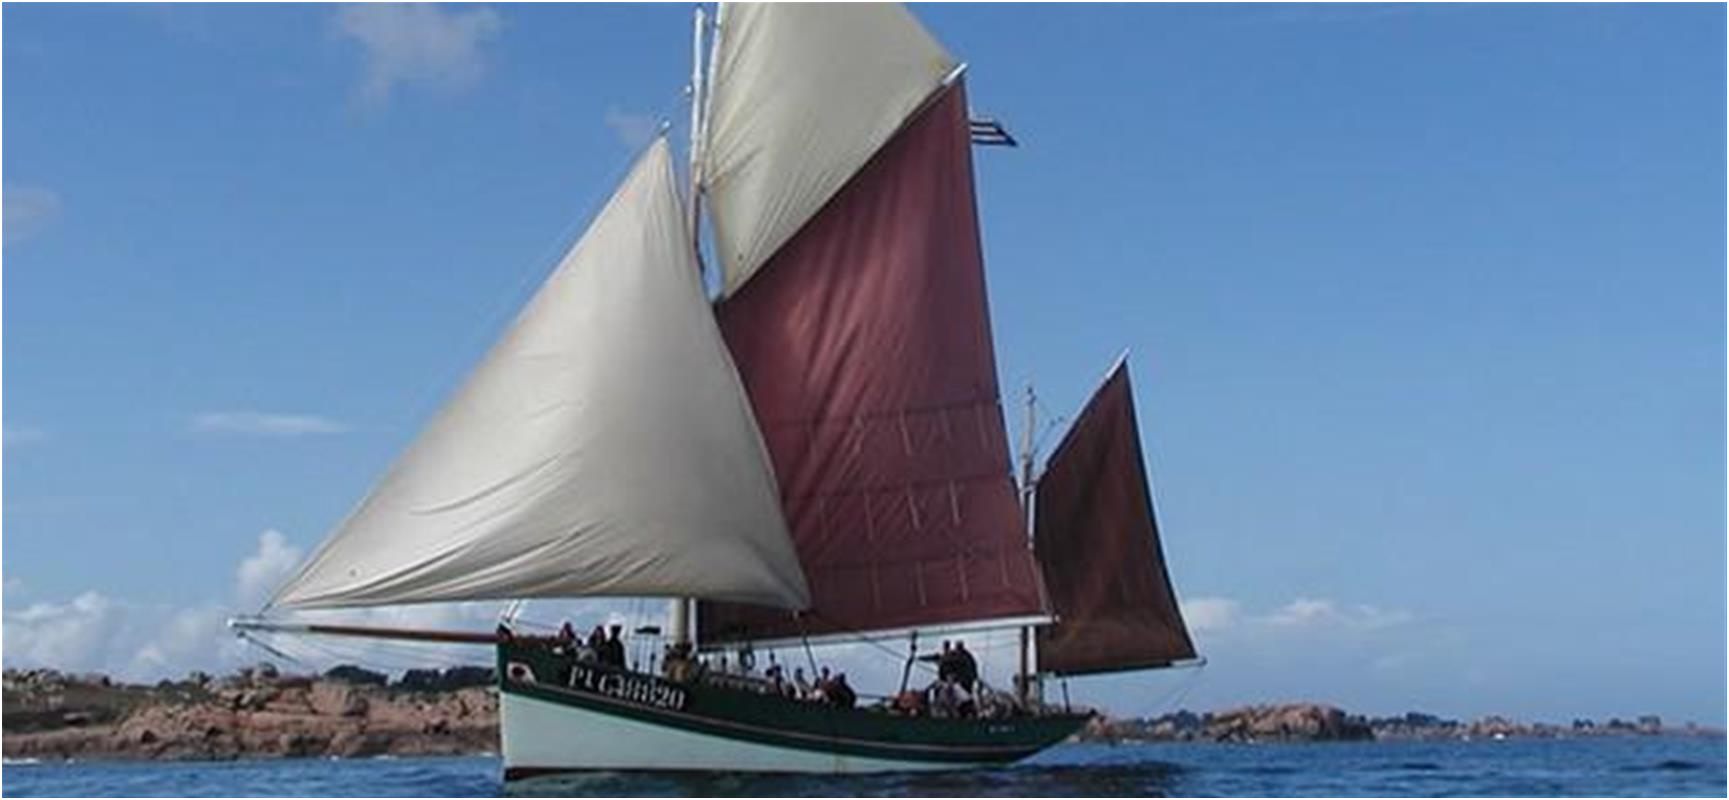 1599 sorties promenades et peche en mer a bord de voiliers traditionnels